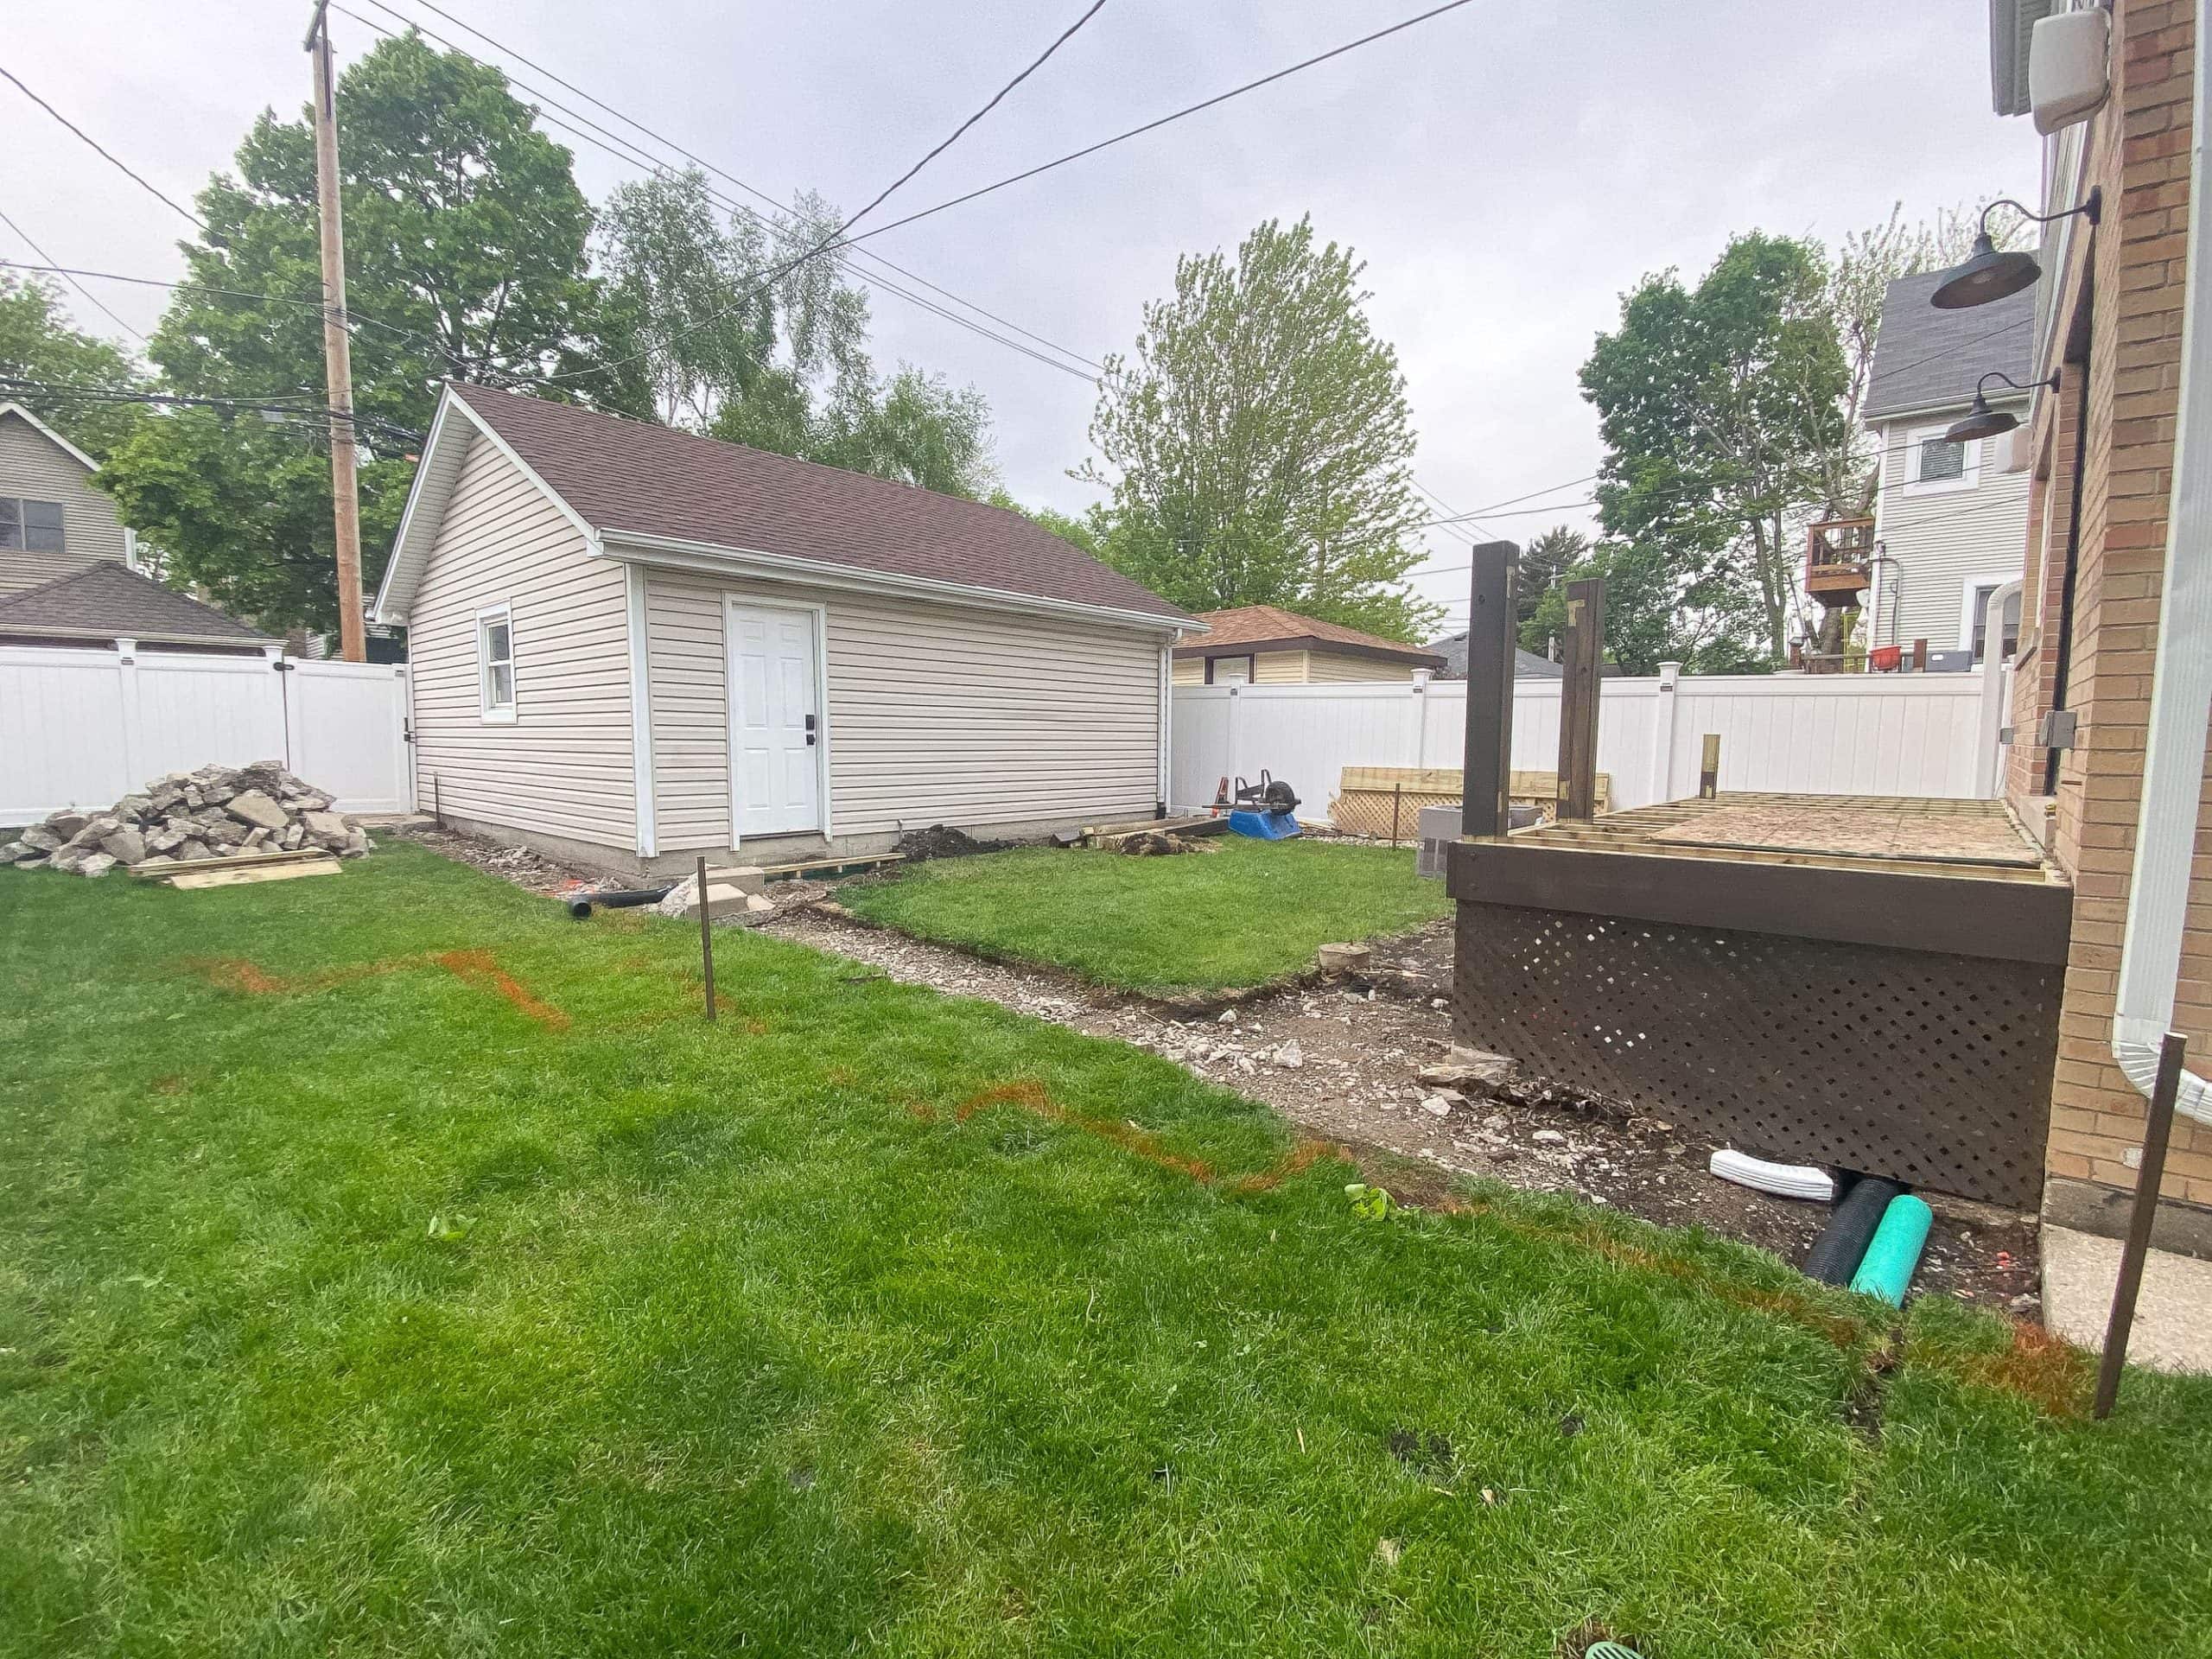 Our backyard renovation progress